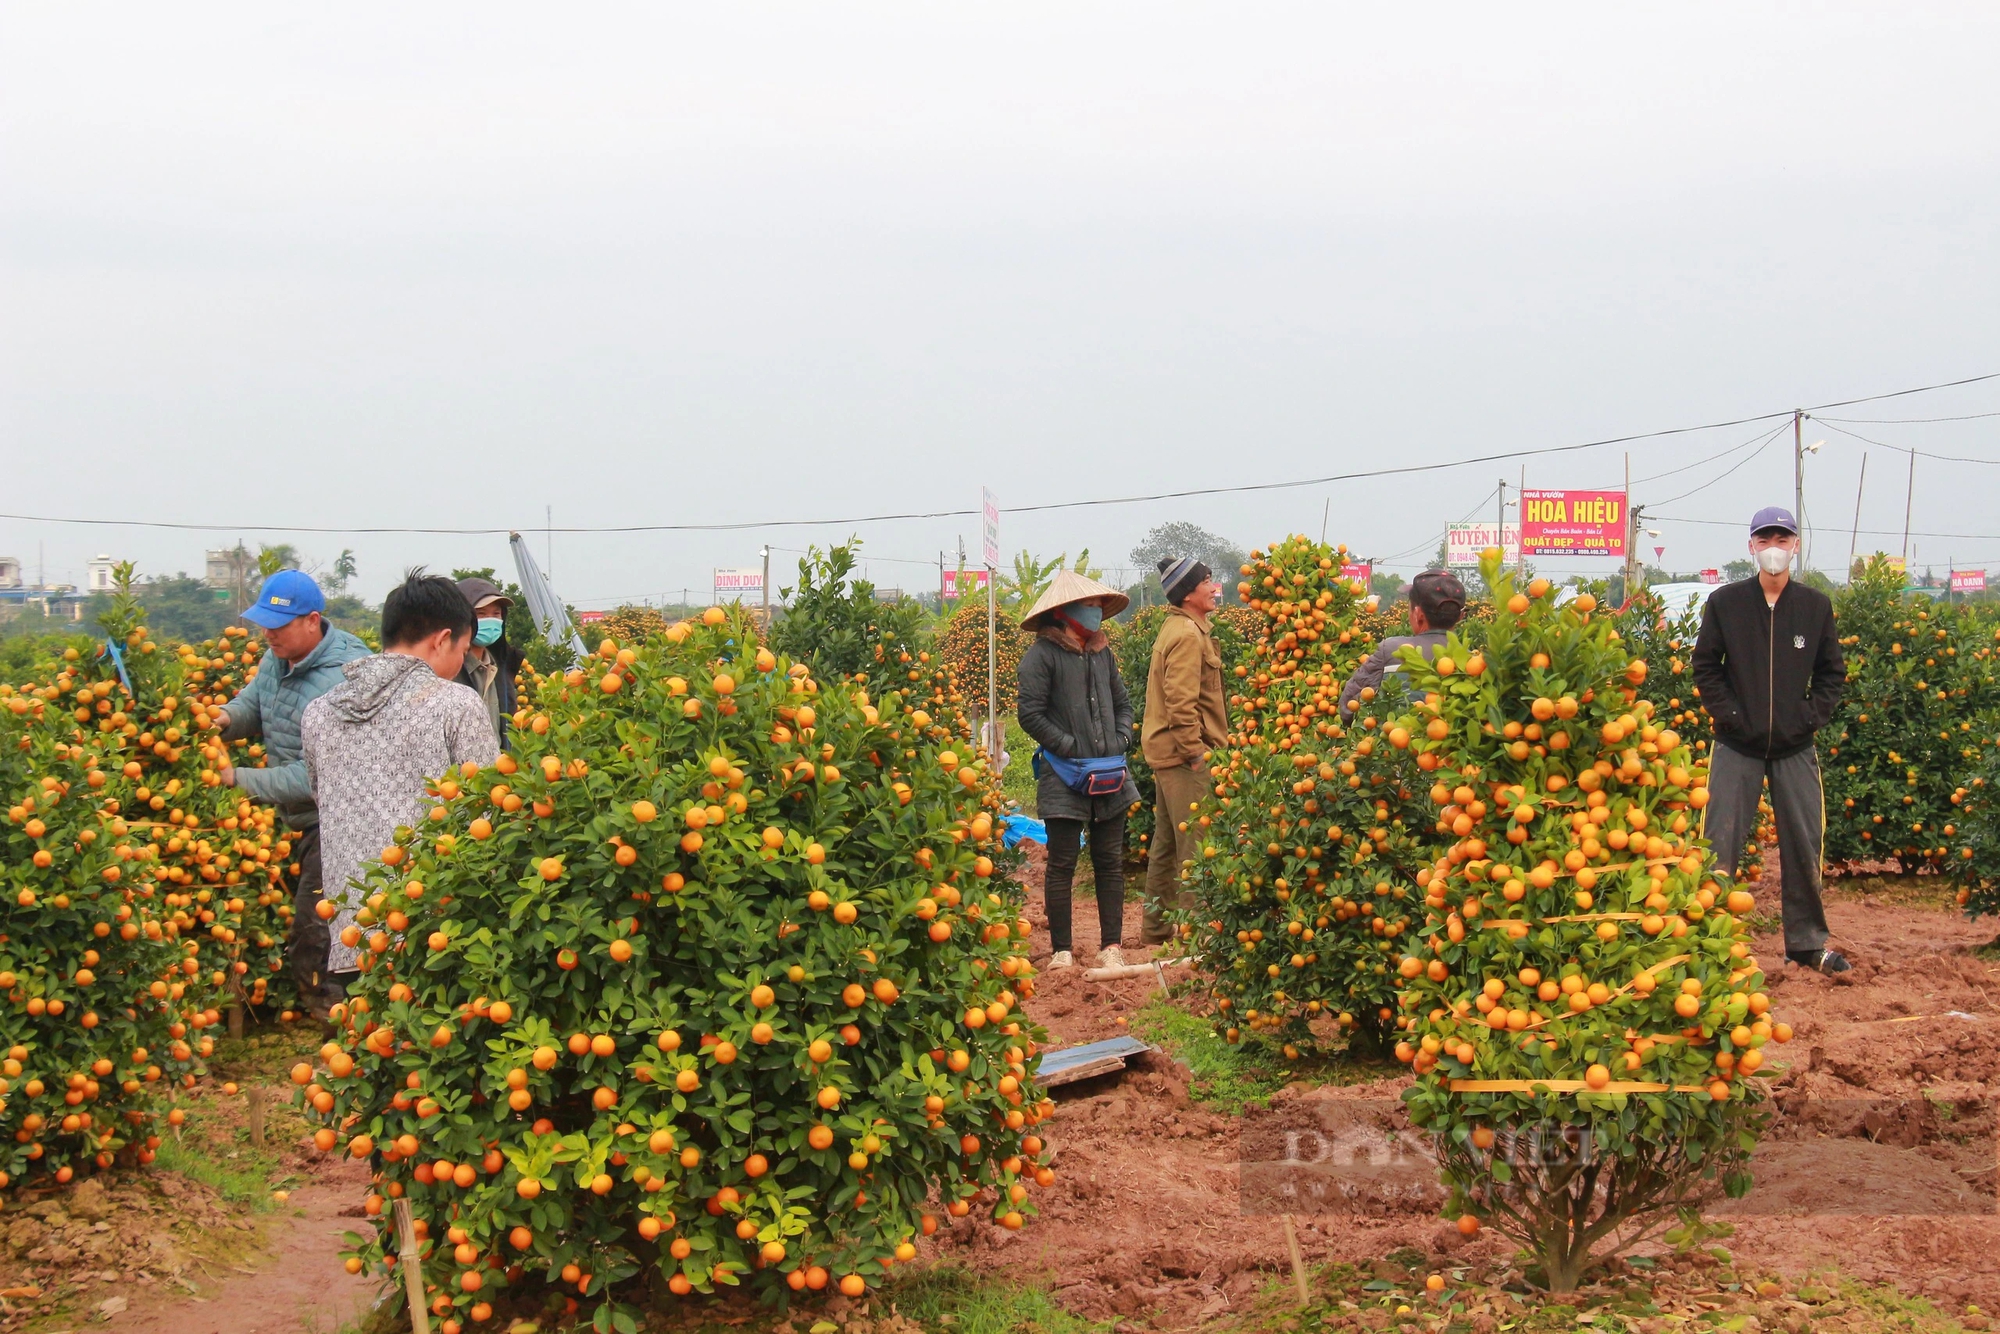 Quất tết toàn cây tăng giá, khách vẫn nườm nượp chở, cả làng trồng quất cảnh ở Nam Định vui- Ảnh 3.